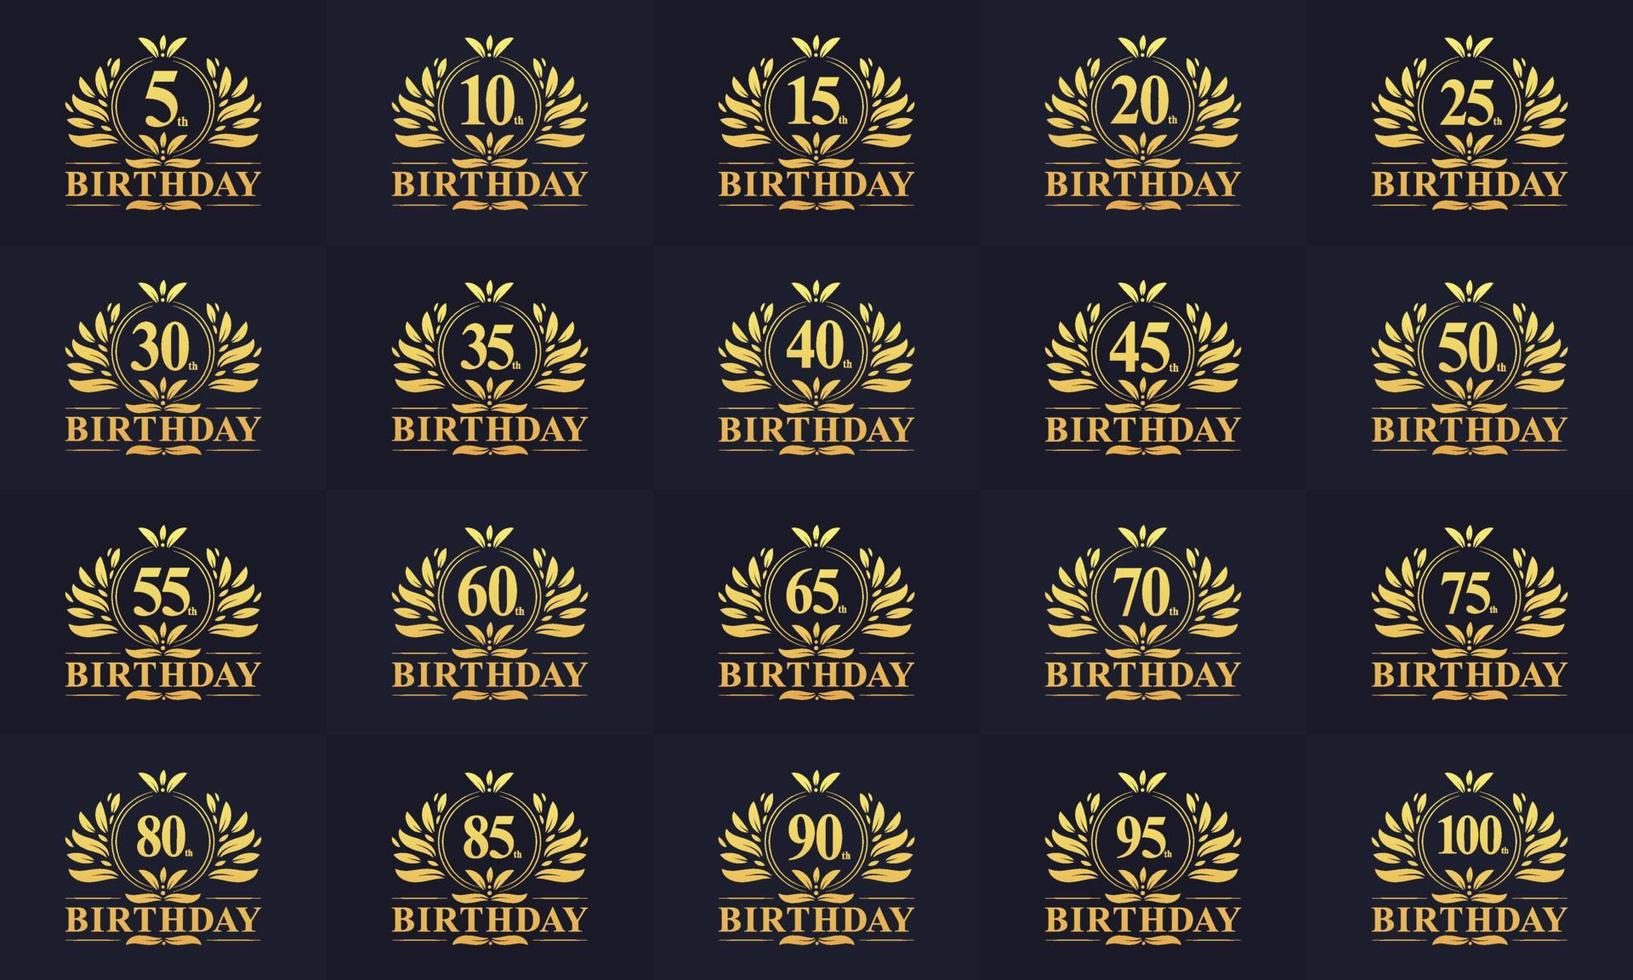 grattis på födelsedagen logotyp bunt. retro vintage födelsedag logotyp set. Logotyppaket för 5:e, 10:e, 15:e, 20:e, 25:e, 30:e, 35:e, 40:e, 45:e, 50:e födelsedagen. vektor